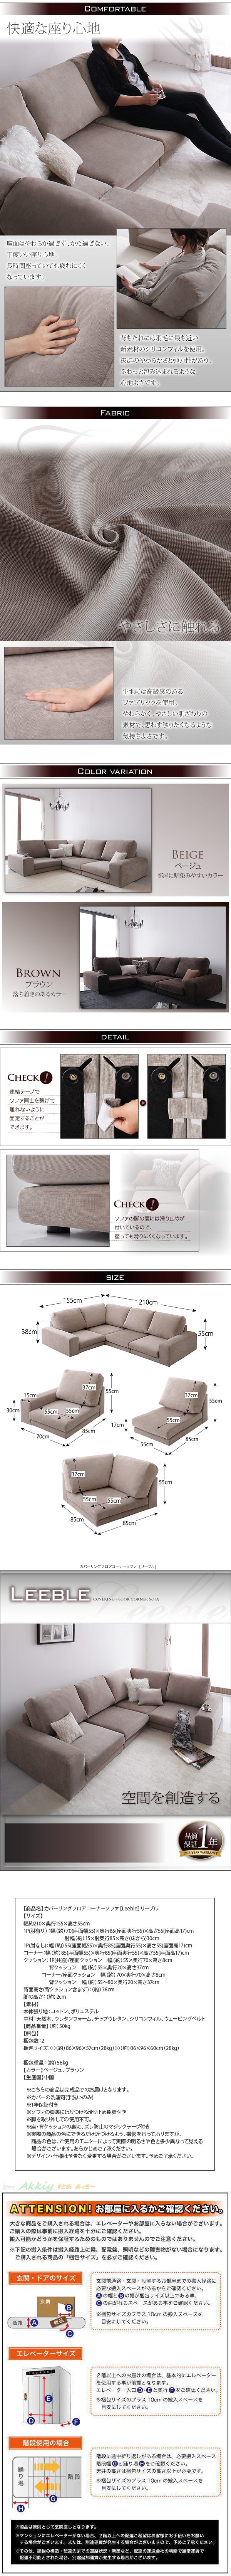 【大阪売り】■Leeble/ブラウン カバーリングフロアコーナーソファ [リーブル] 布製